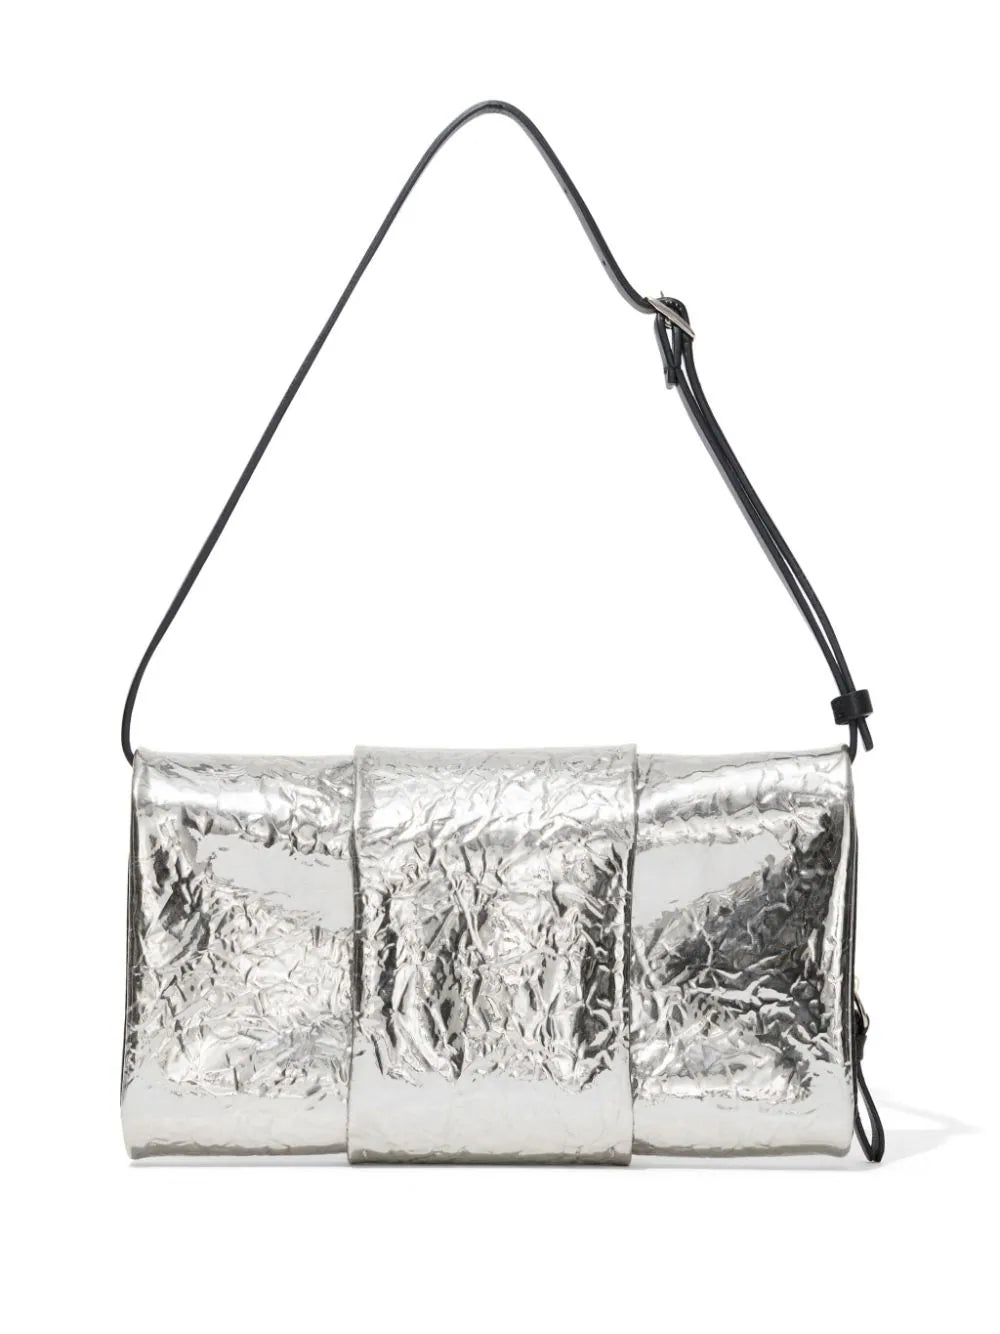 Flip Shoulder Bag in Crinkled Metallic Silver